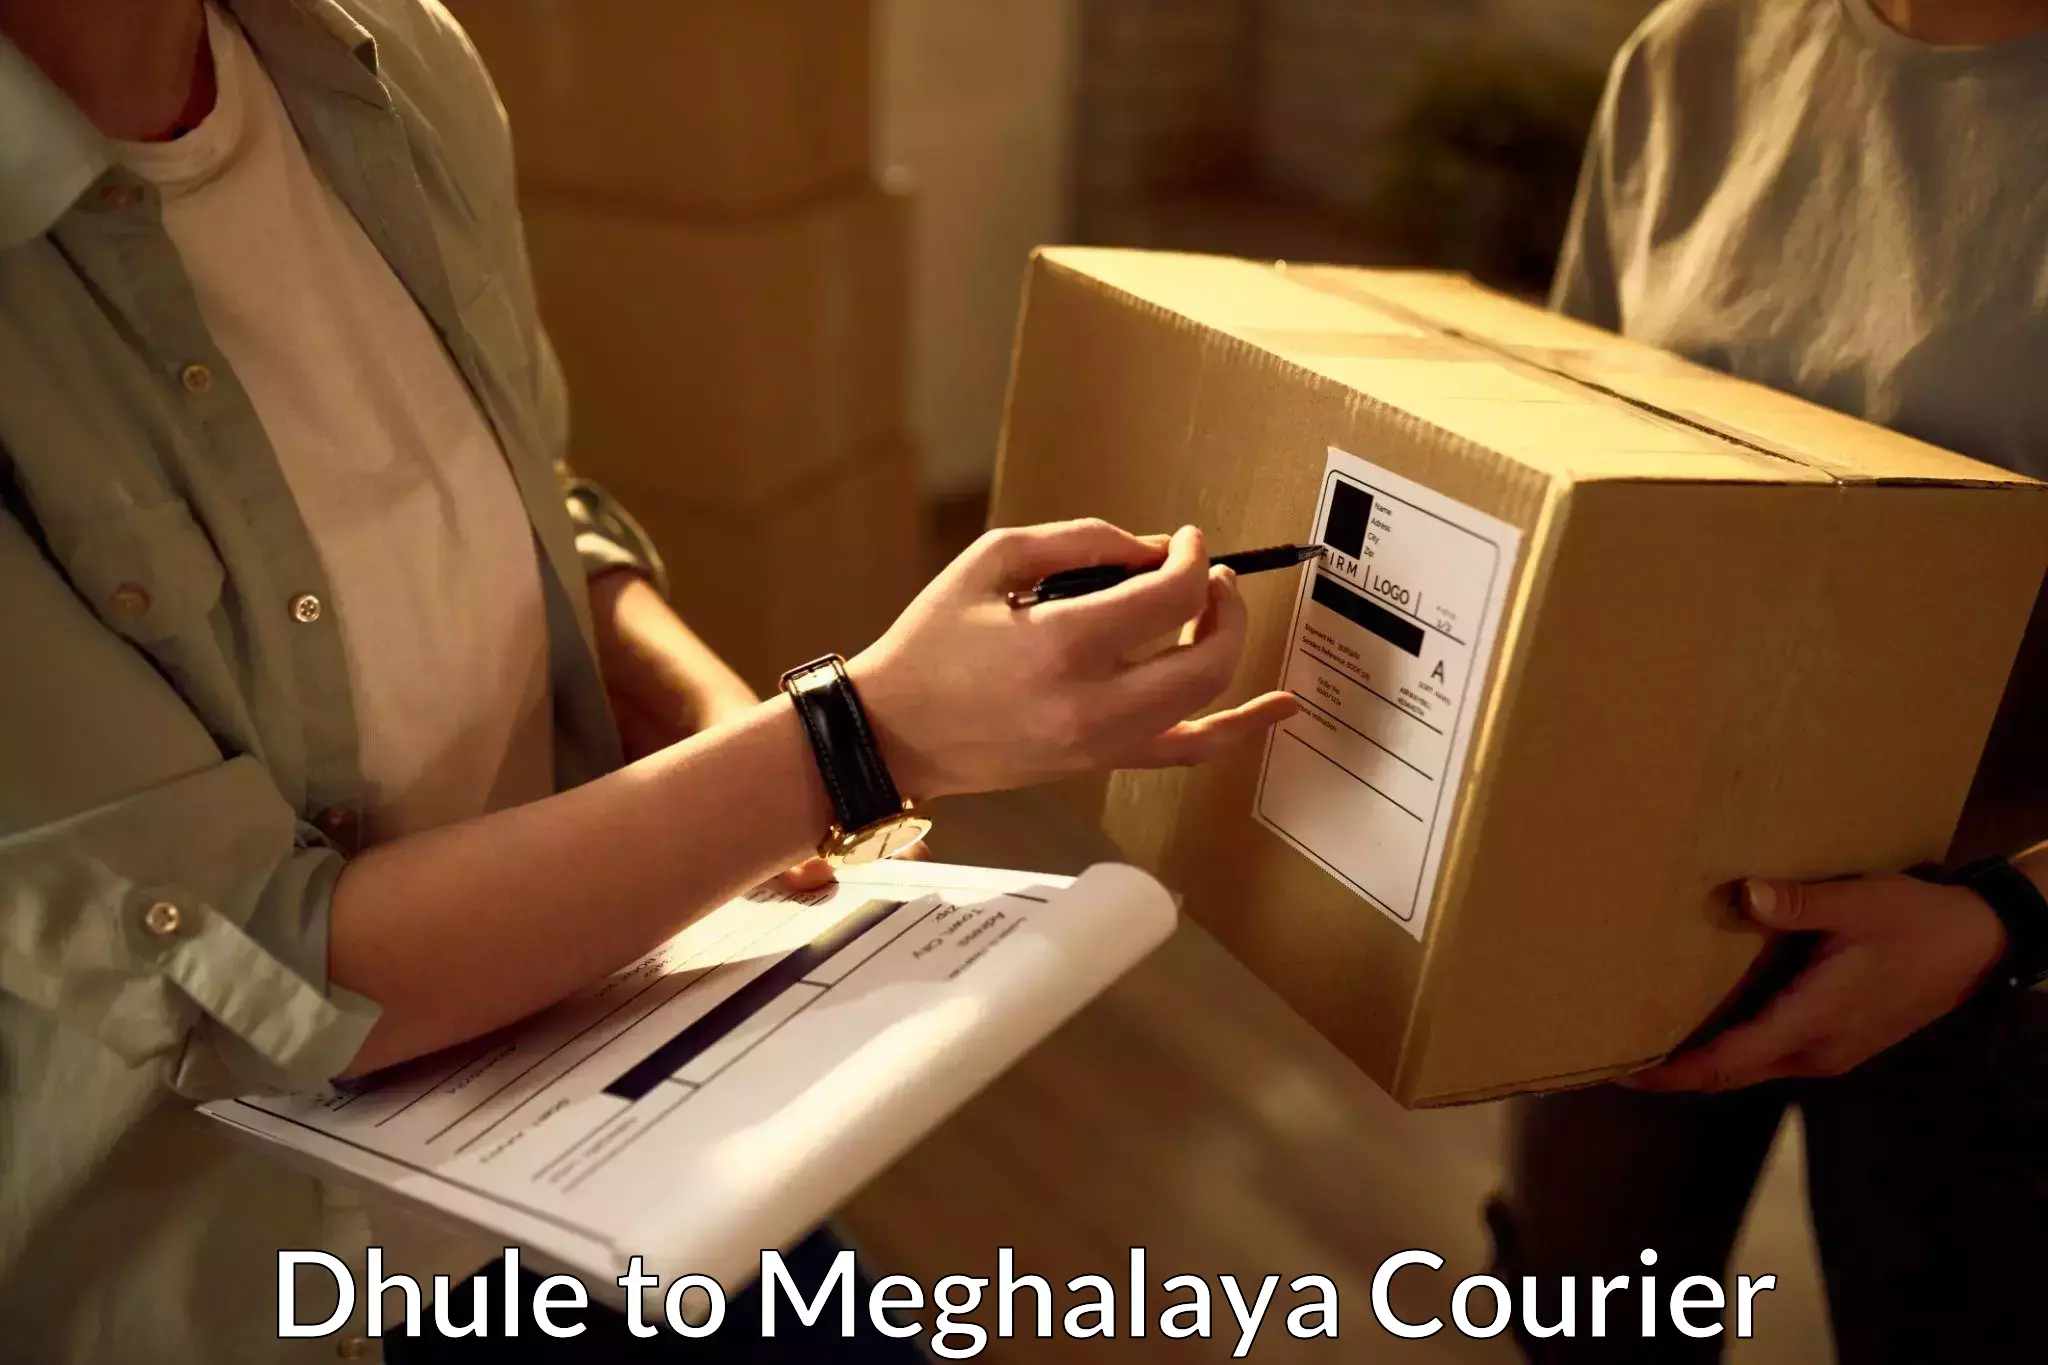 Budget-friendly shipping Dhule to Cherrapunji